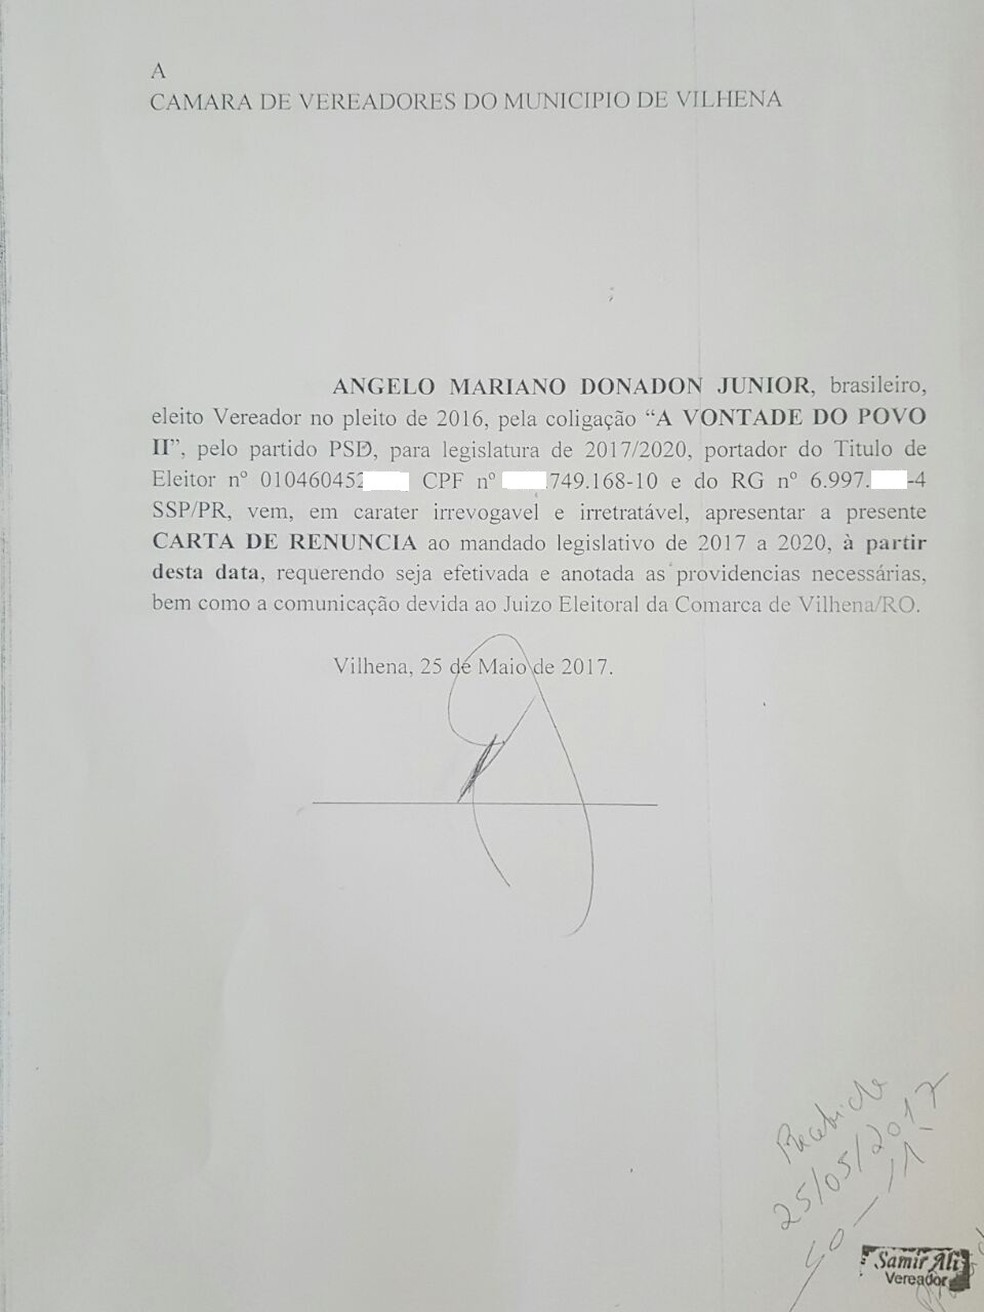 Carta de renúncia foi apresentada na Câmara nesta quinta-feira (Foto: Reprodução/WhatsApp)